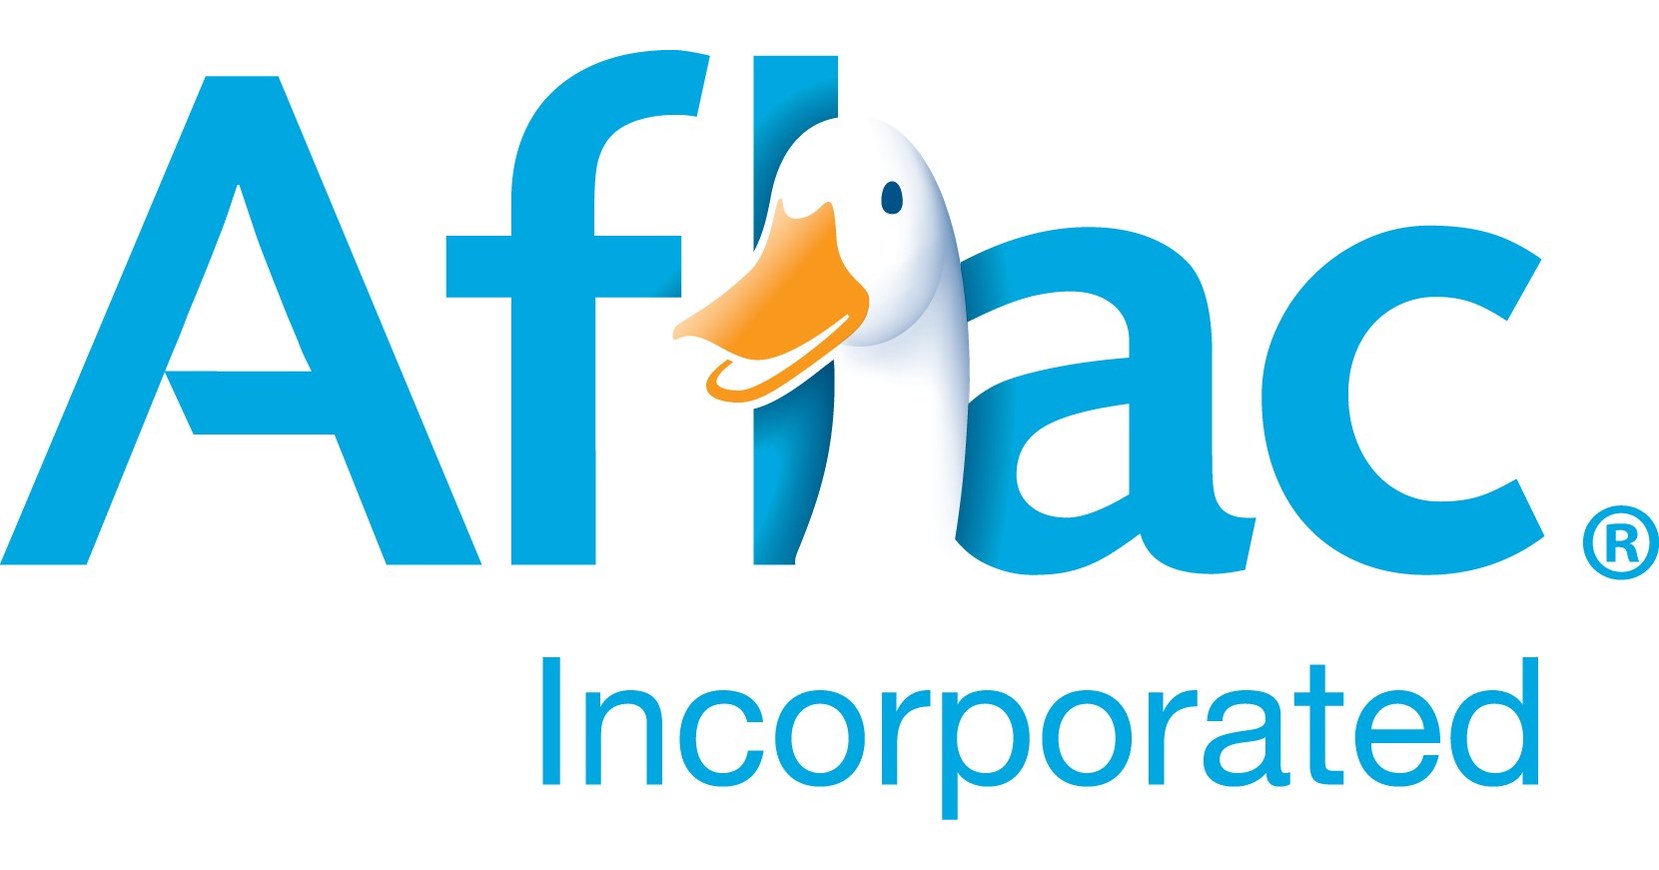 Aflac Incorporated veröffentlicht seinen Tätigkeits- und Nachhaltigkeitsbericht 2021